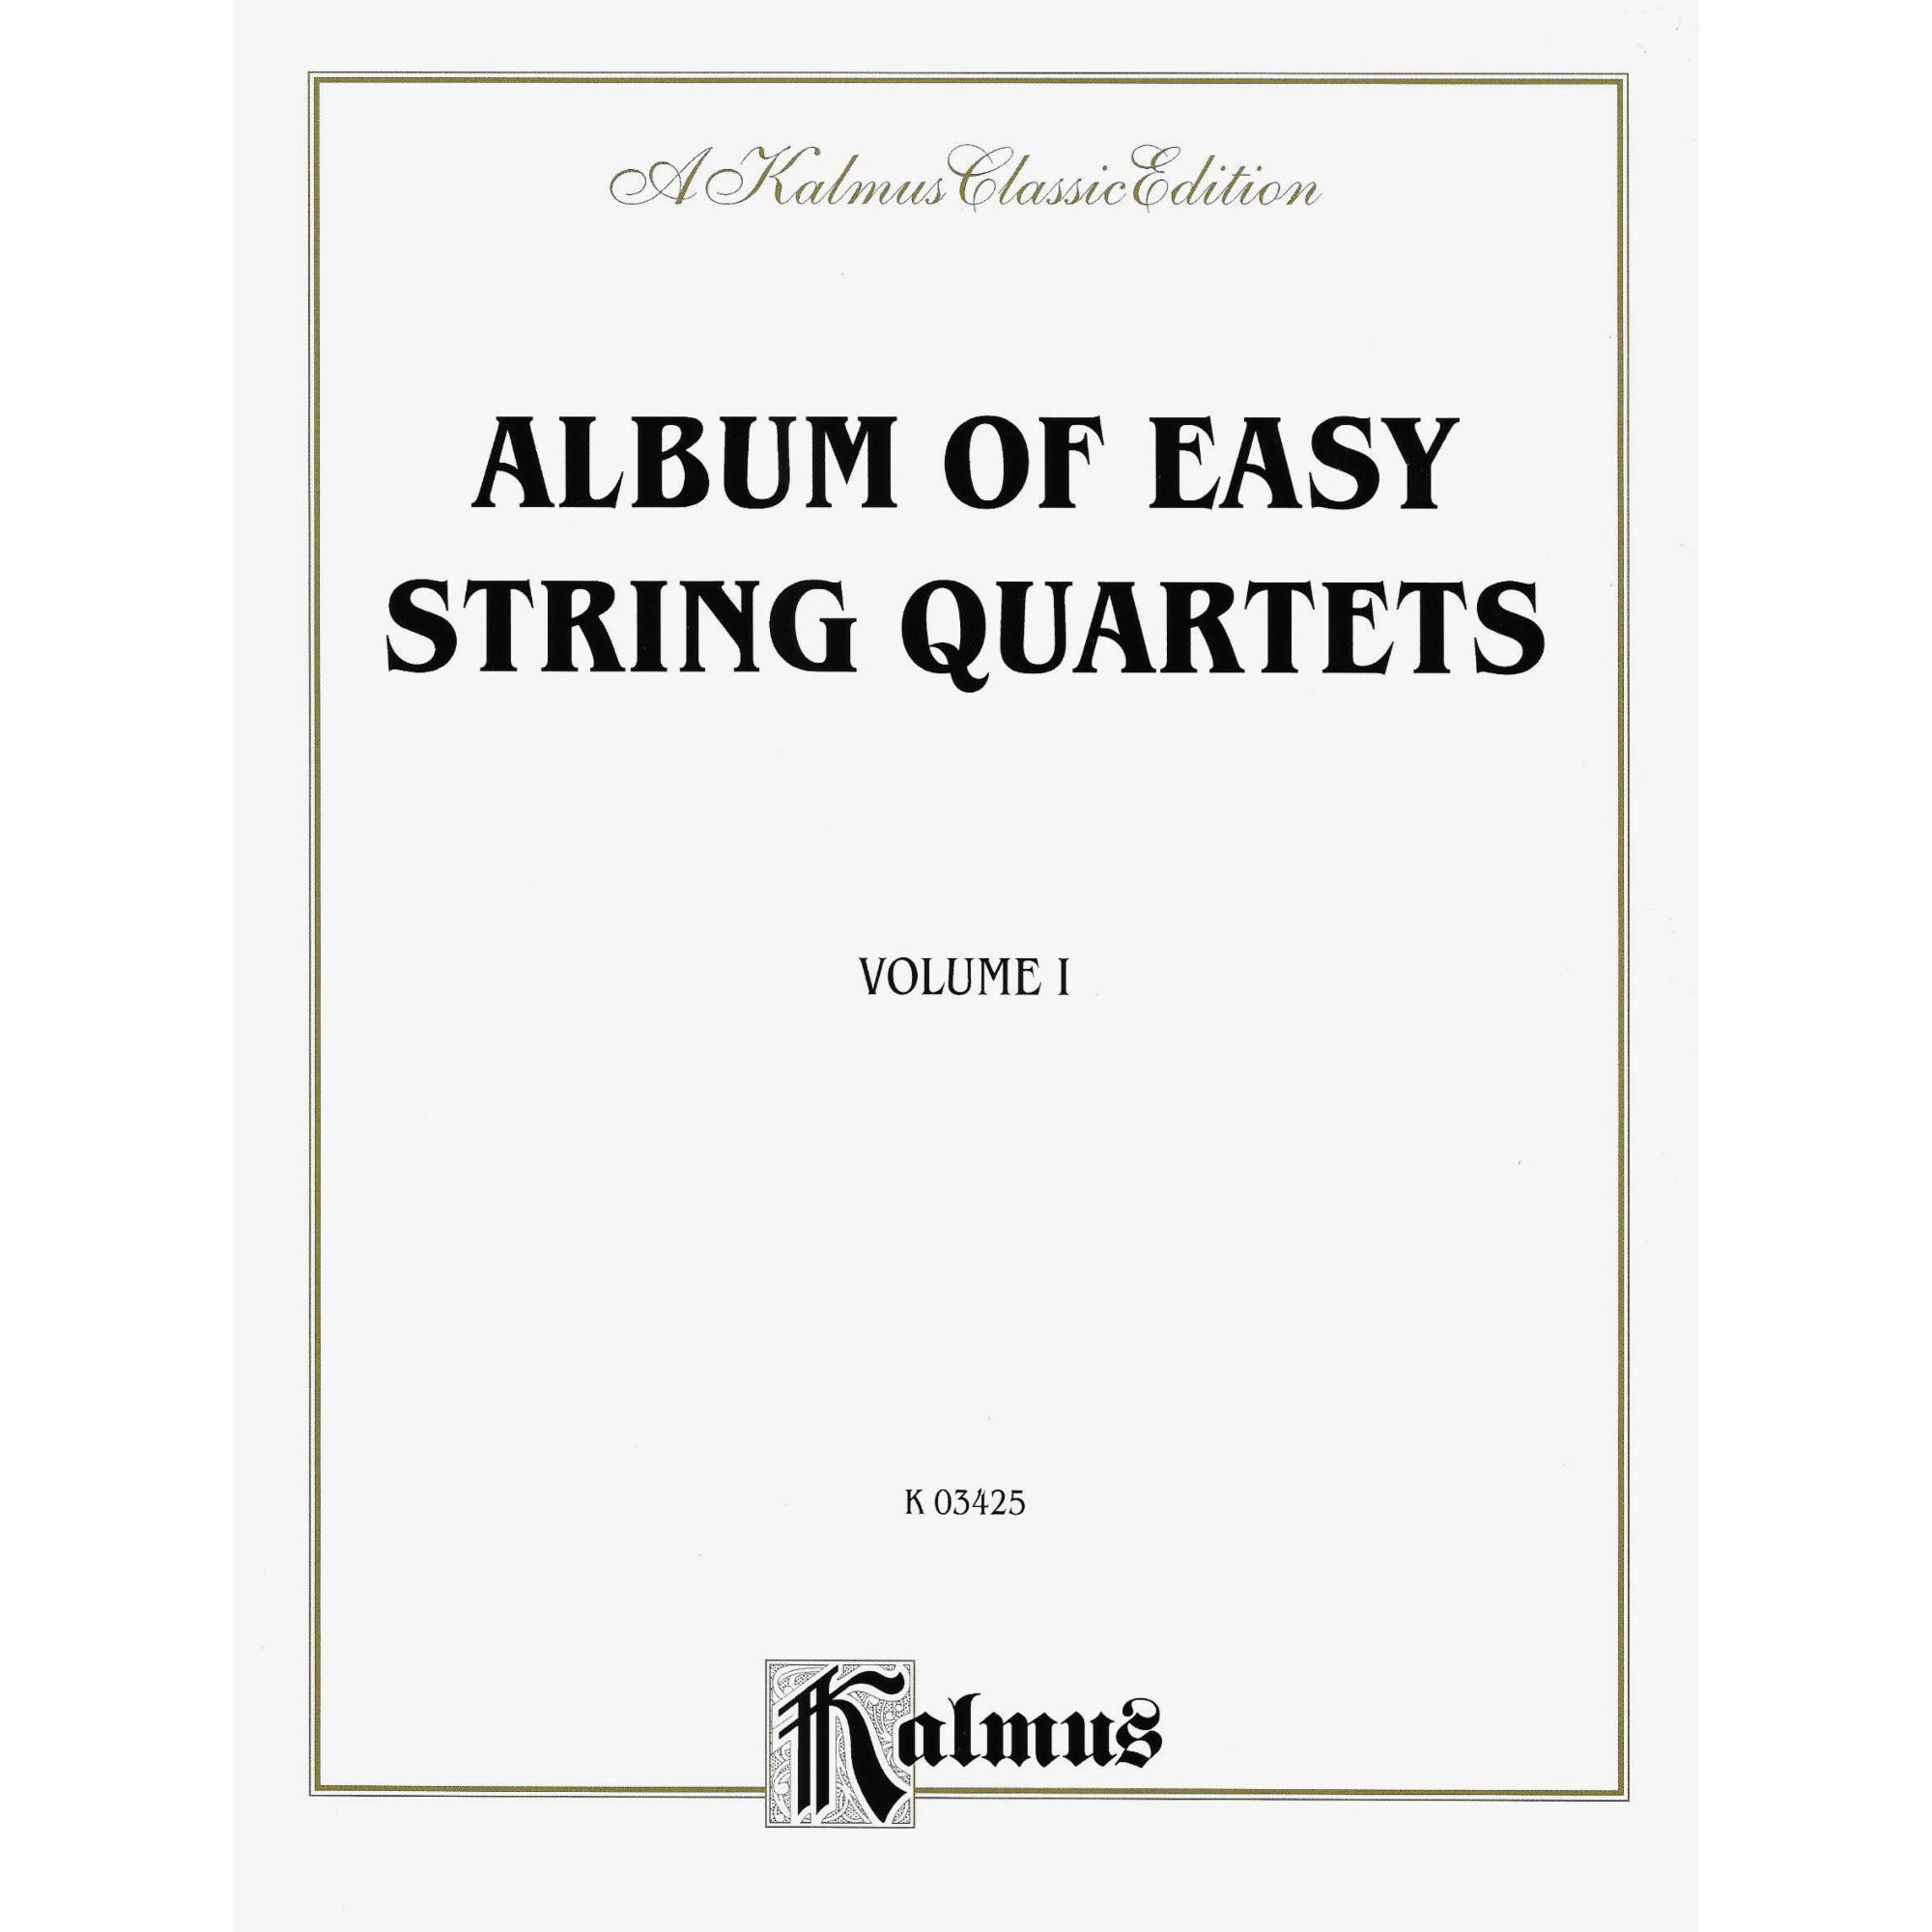 Album of Easy String Quartets, Vols. 1-3